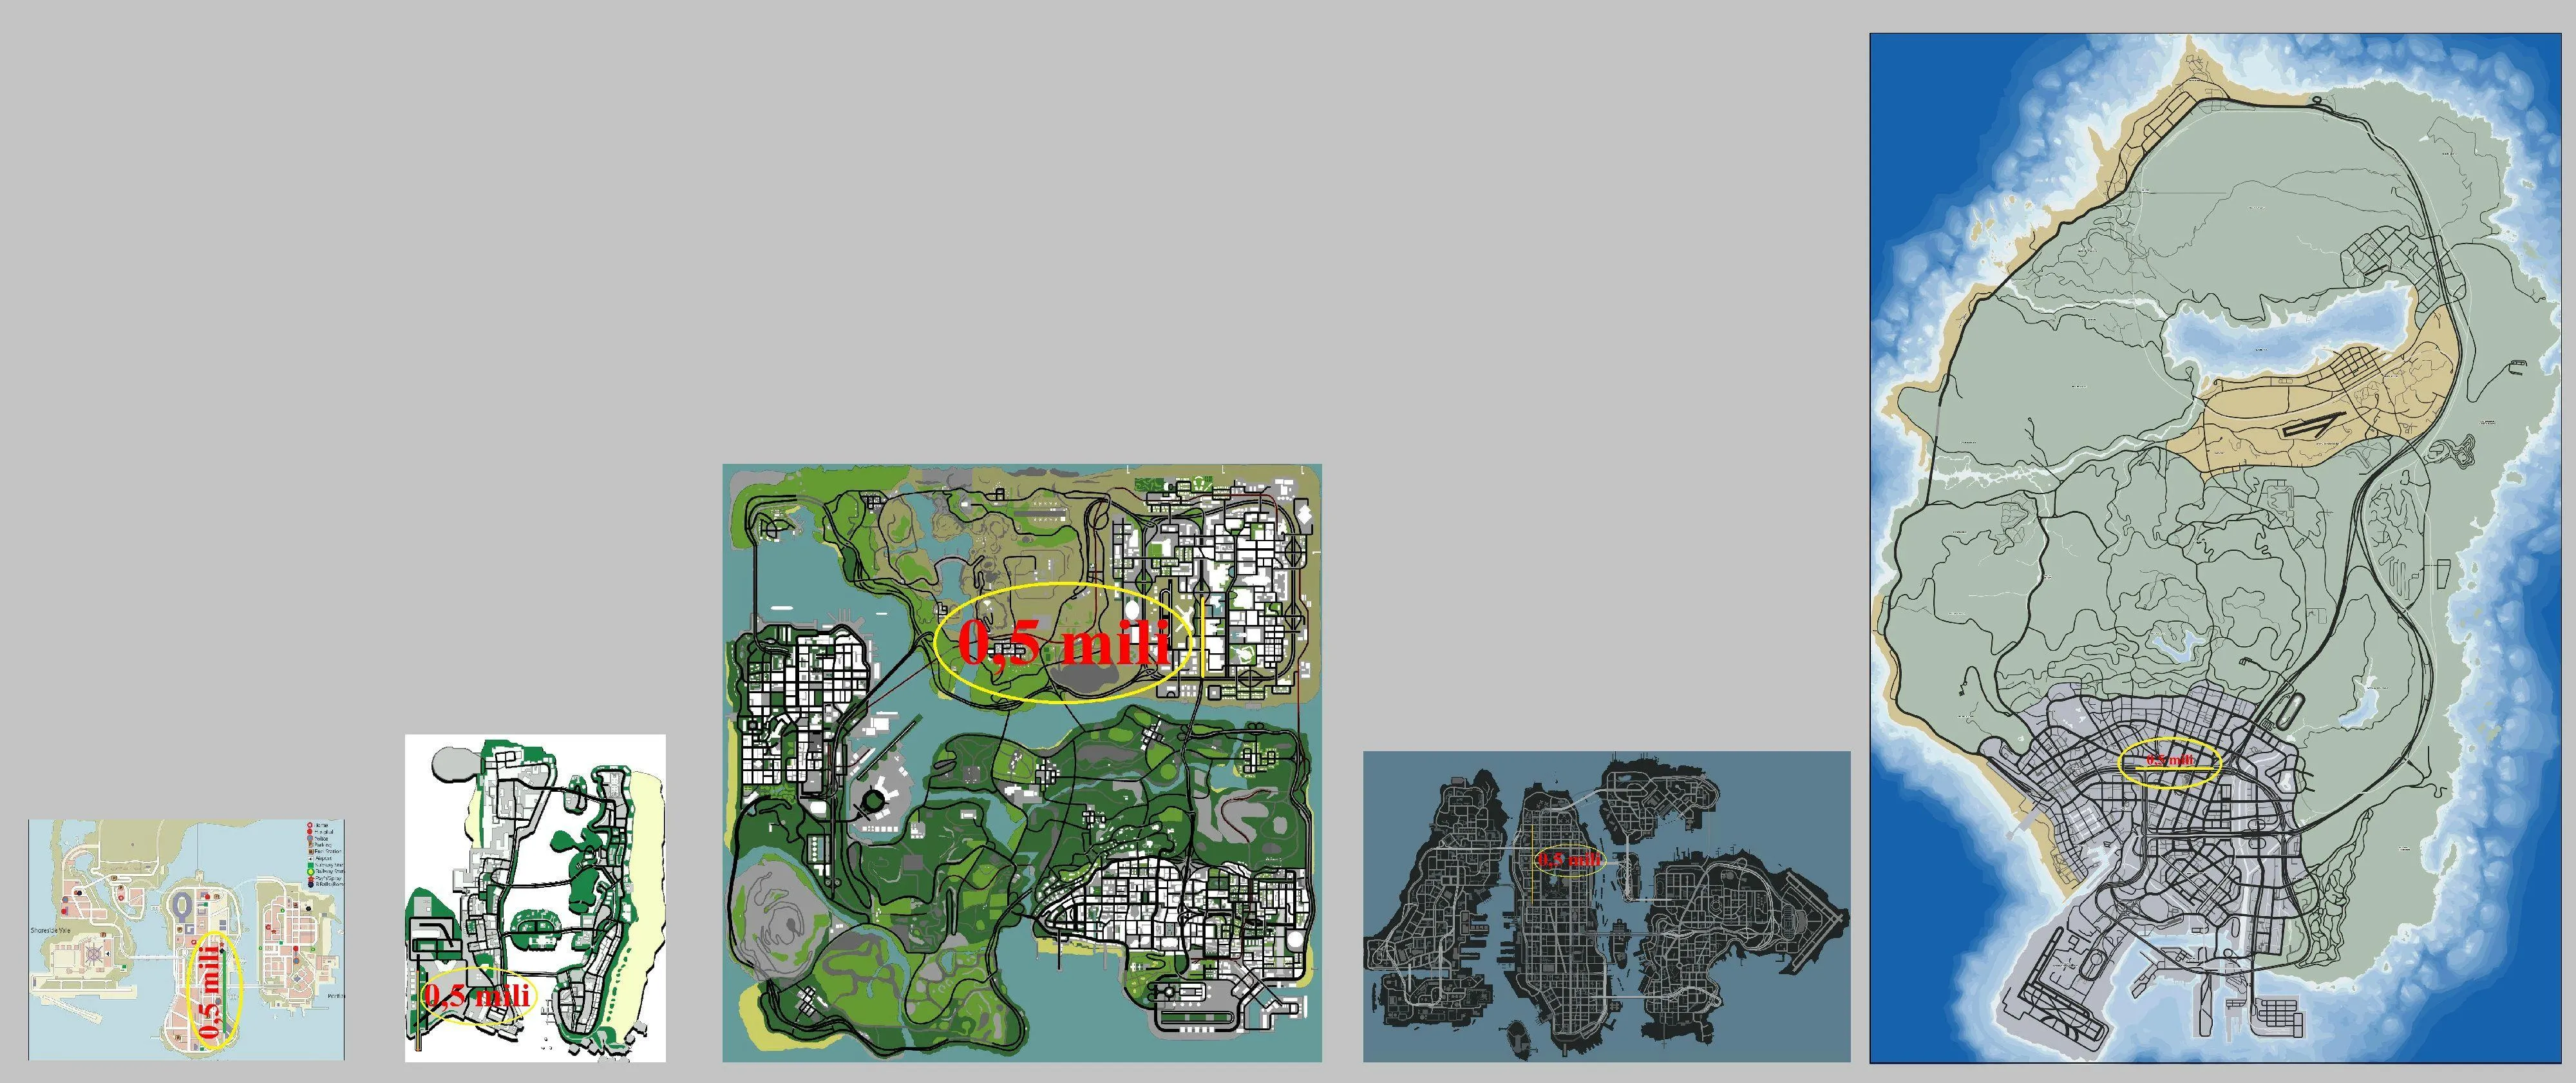 gta map size comparison